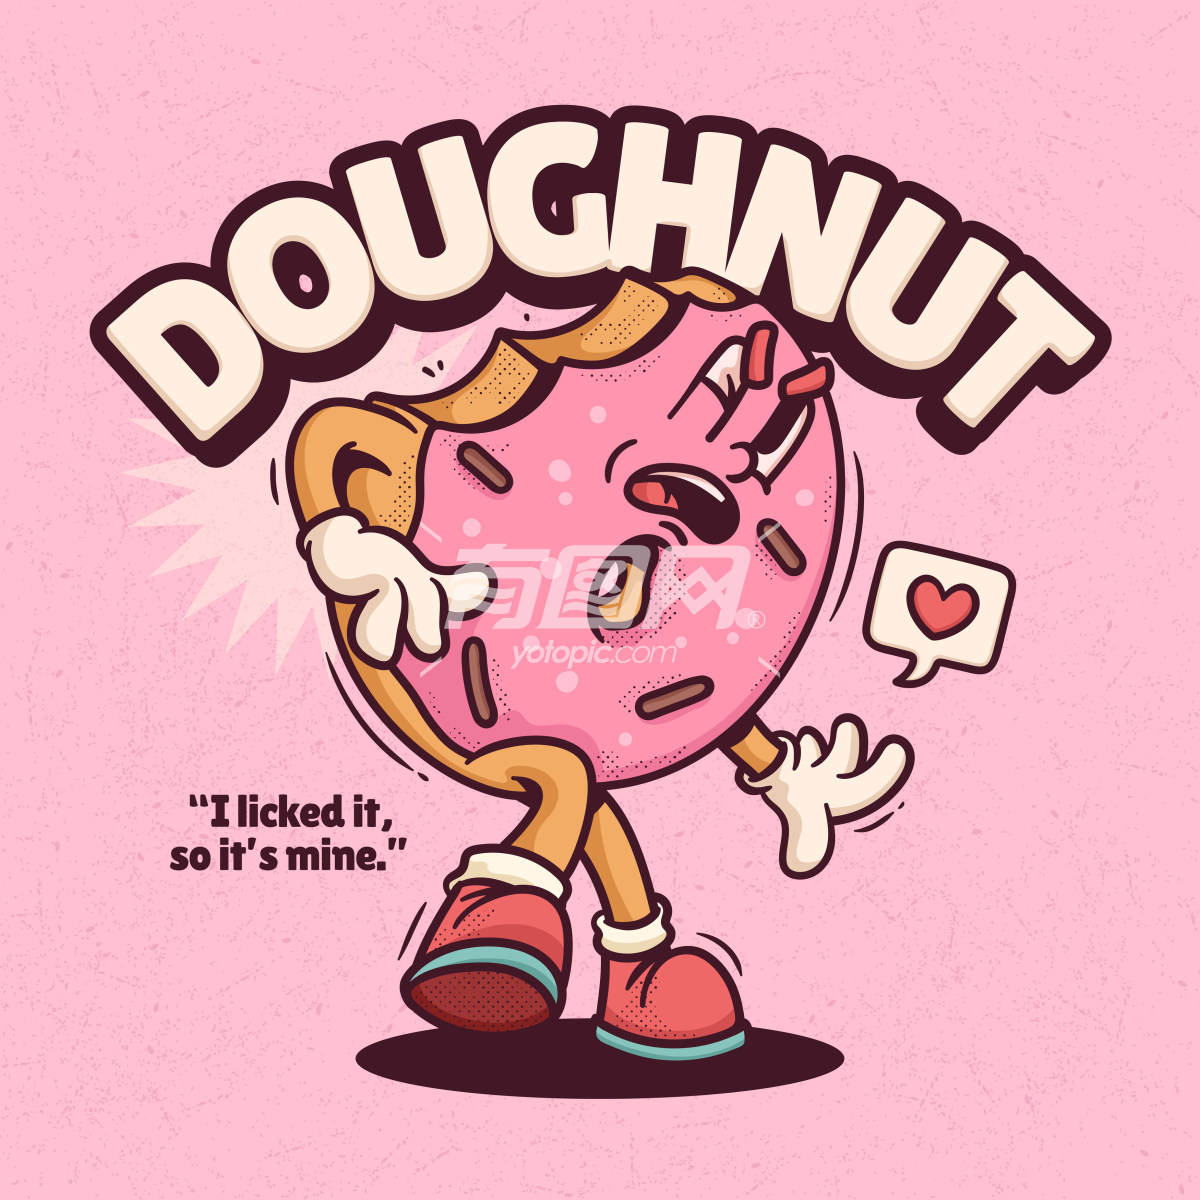 卡通粉色甜甜圈